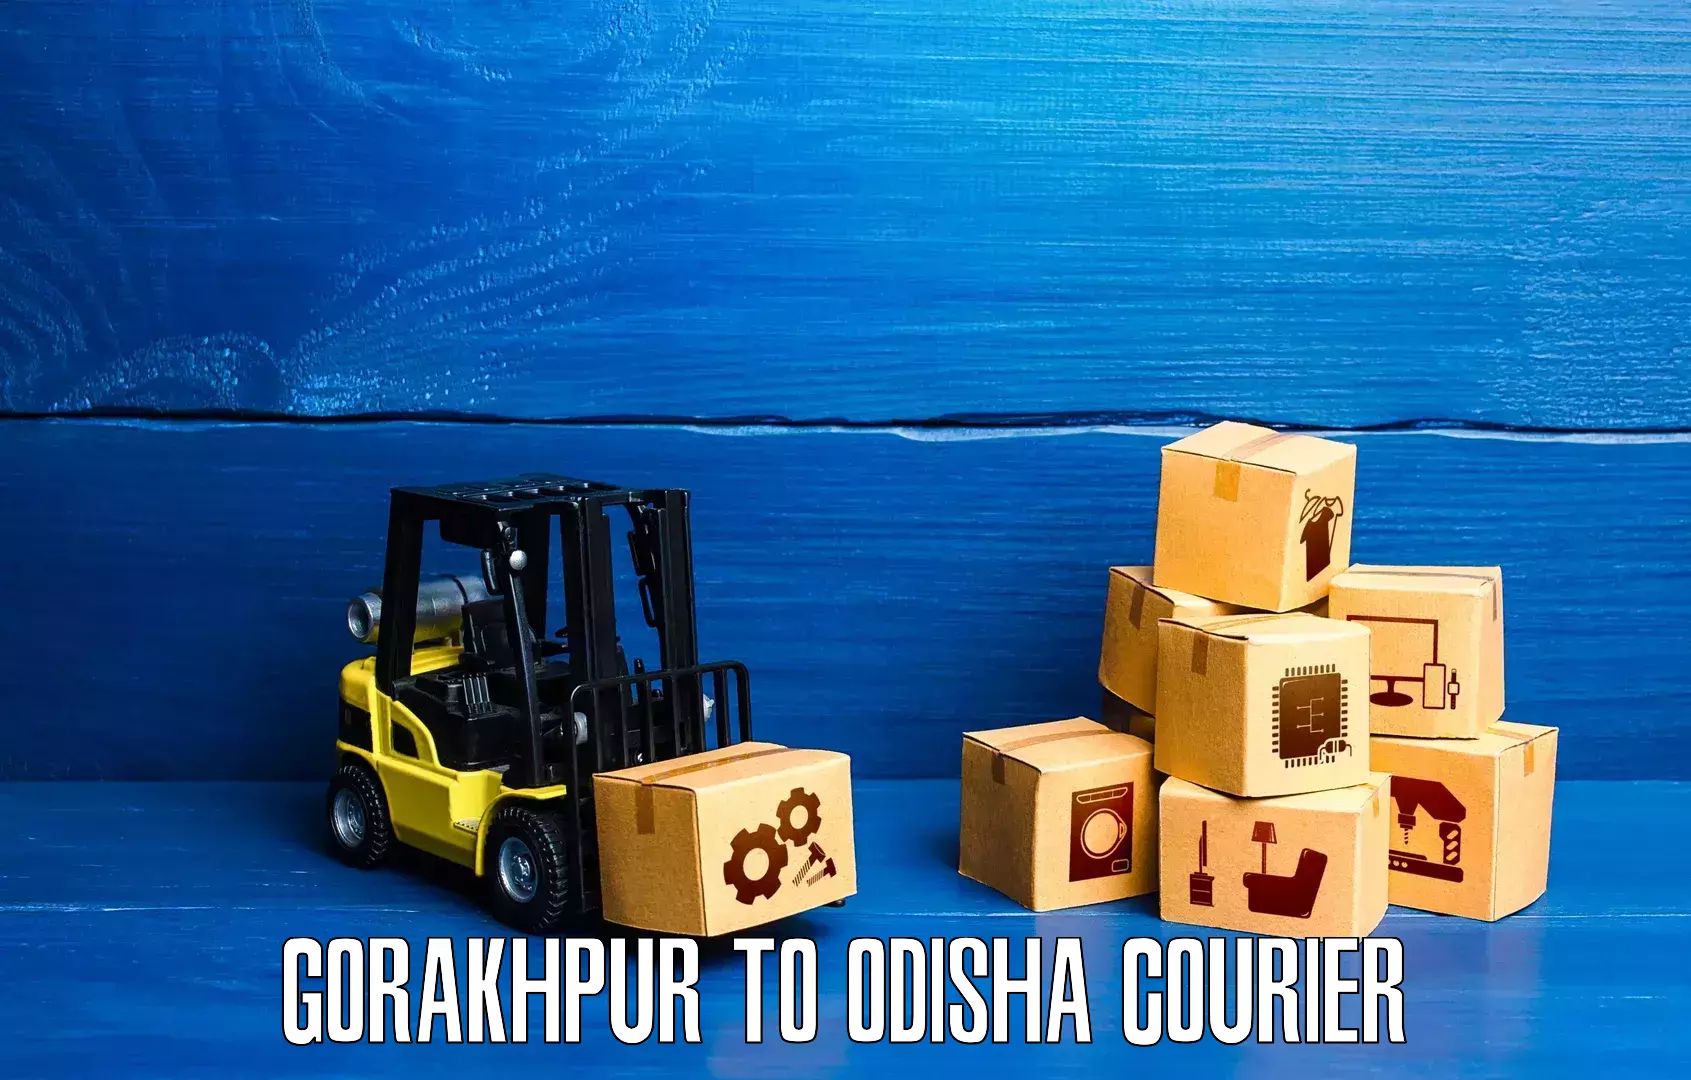 State-of-the-art courier technology Gorakhpur to Balliguda